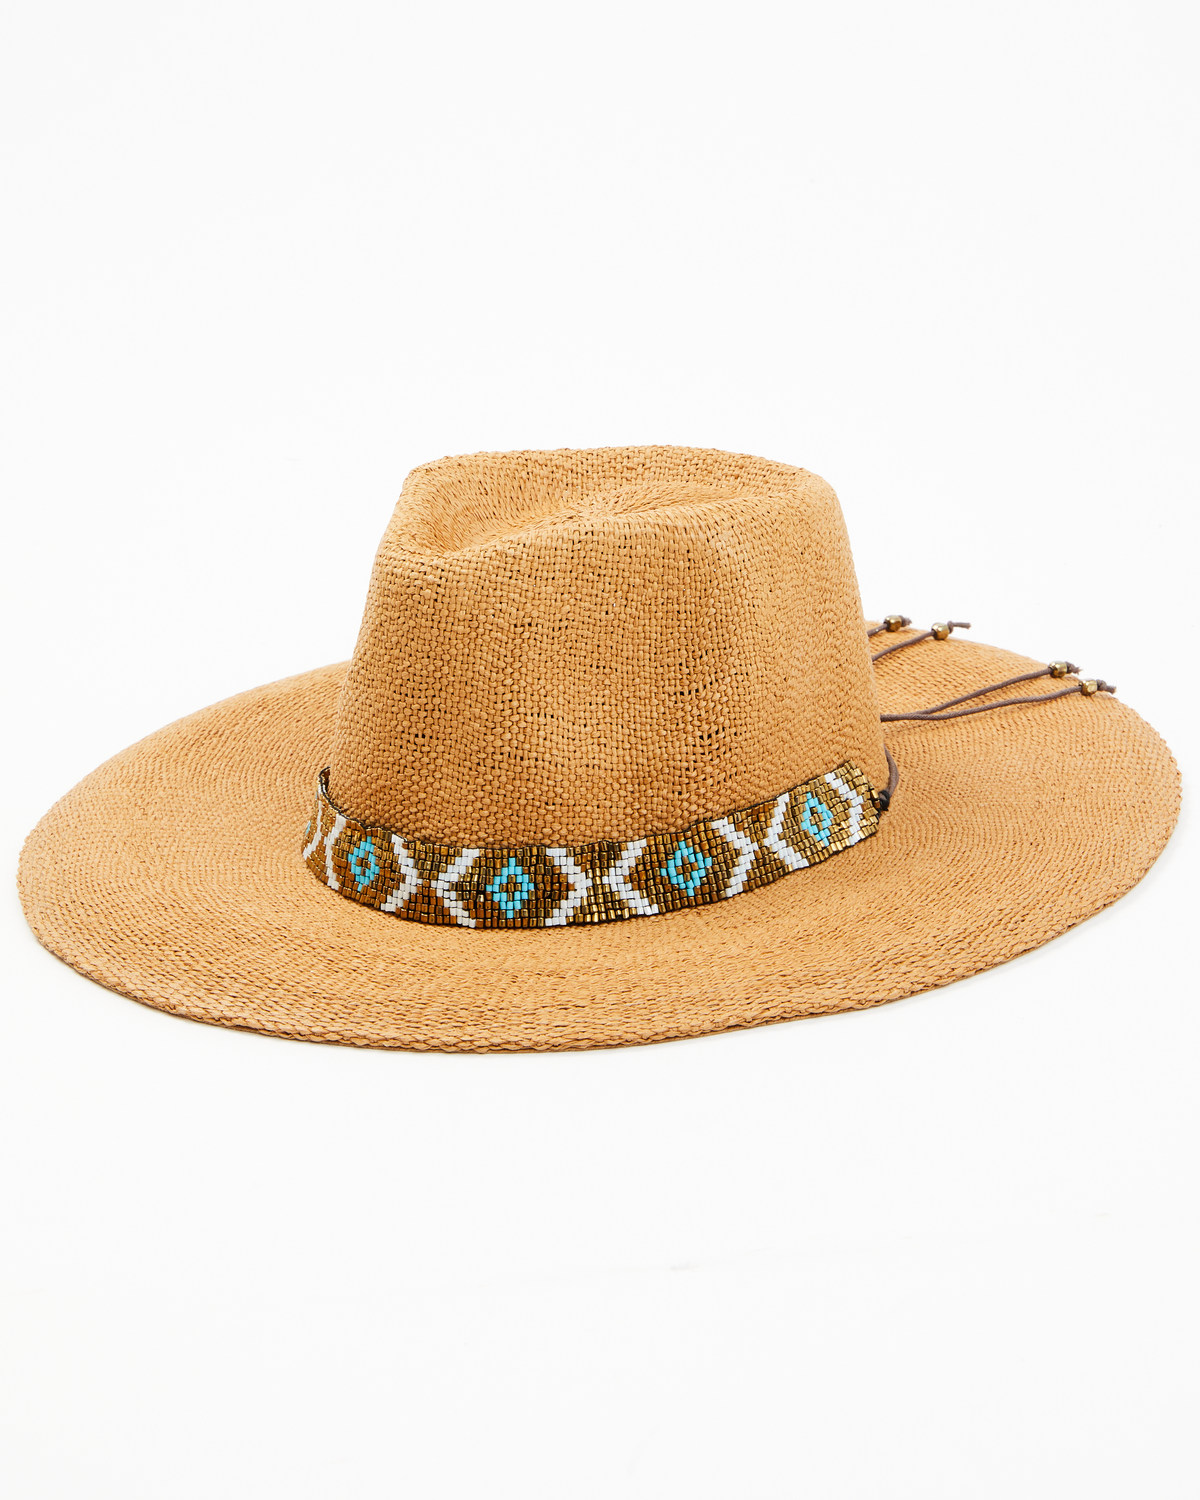 Nikki Beach Women's Straw Rancher Hat